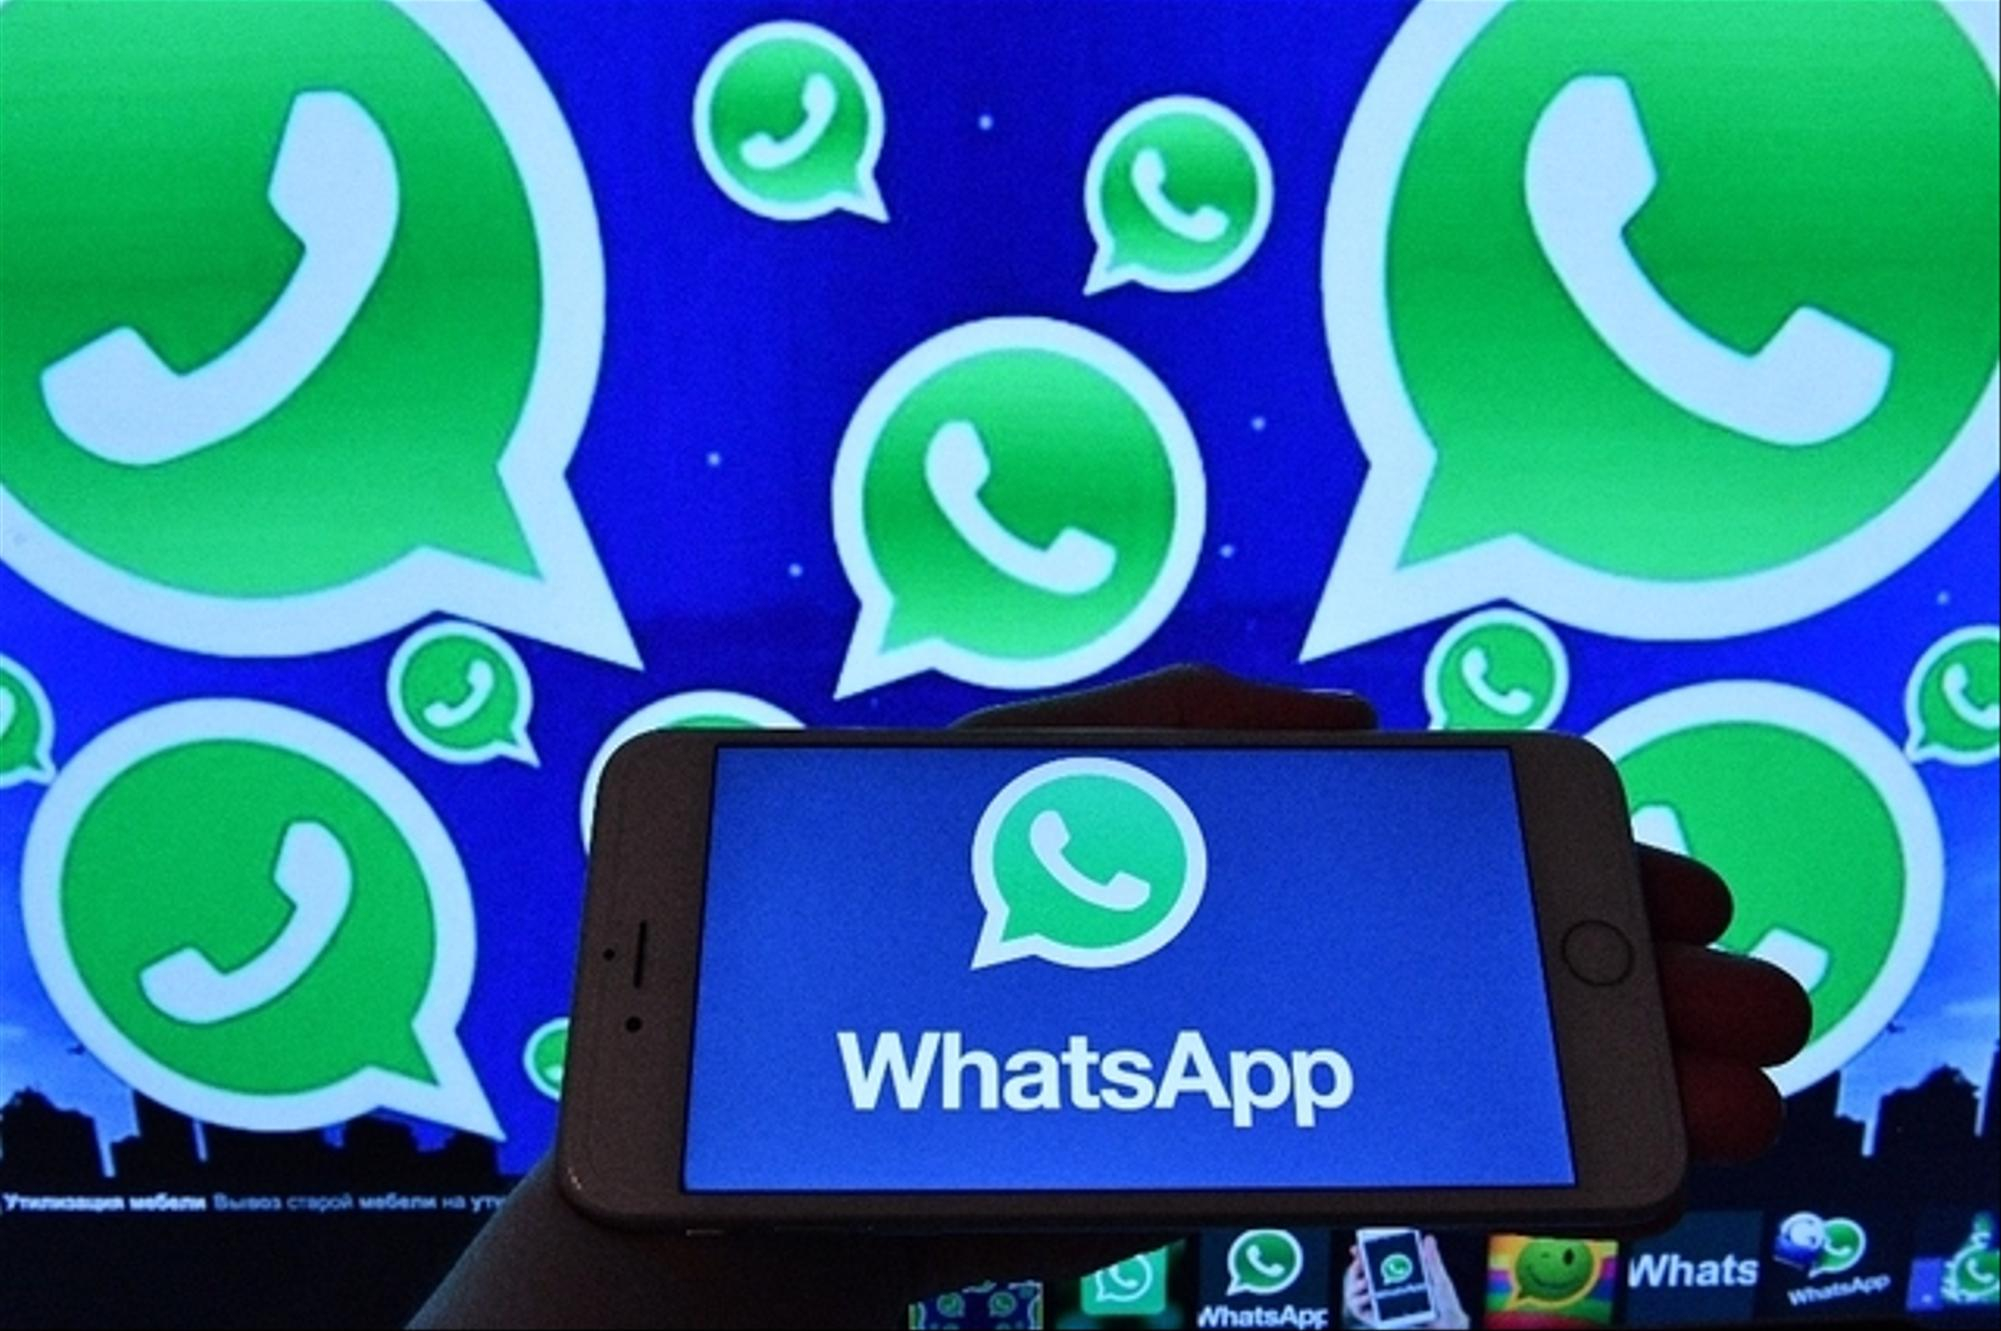 WhatsApp перенес сроки введения новой политики из-за резкой критики